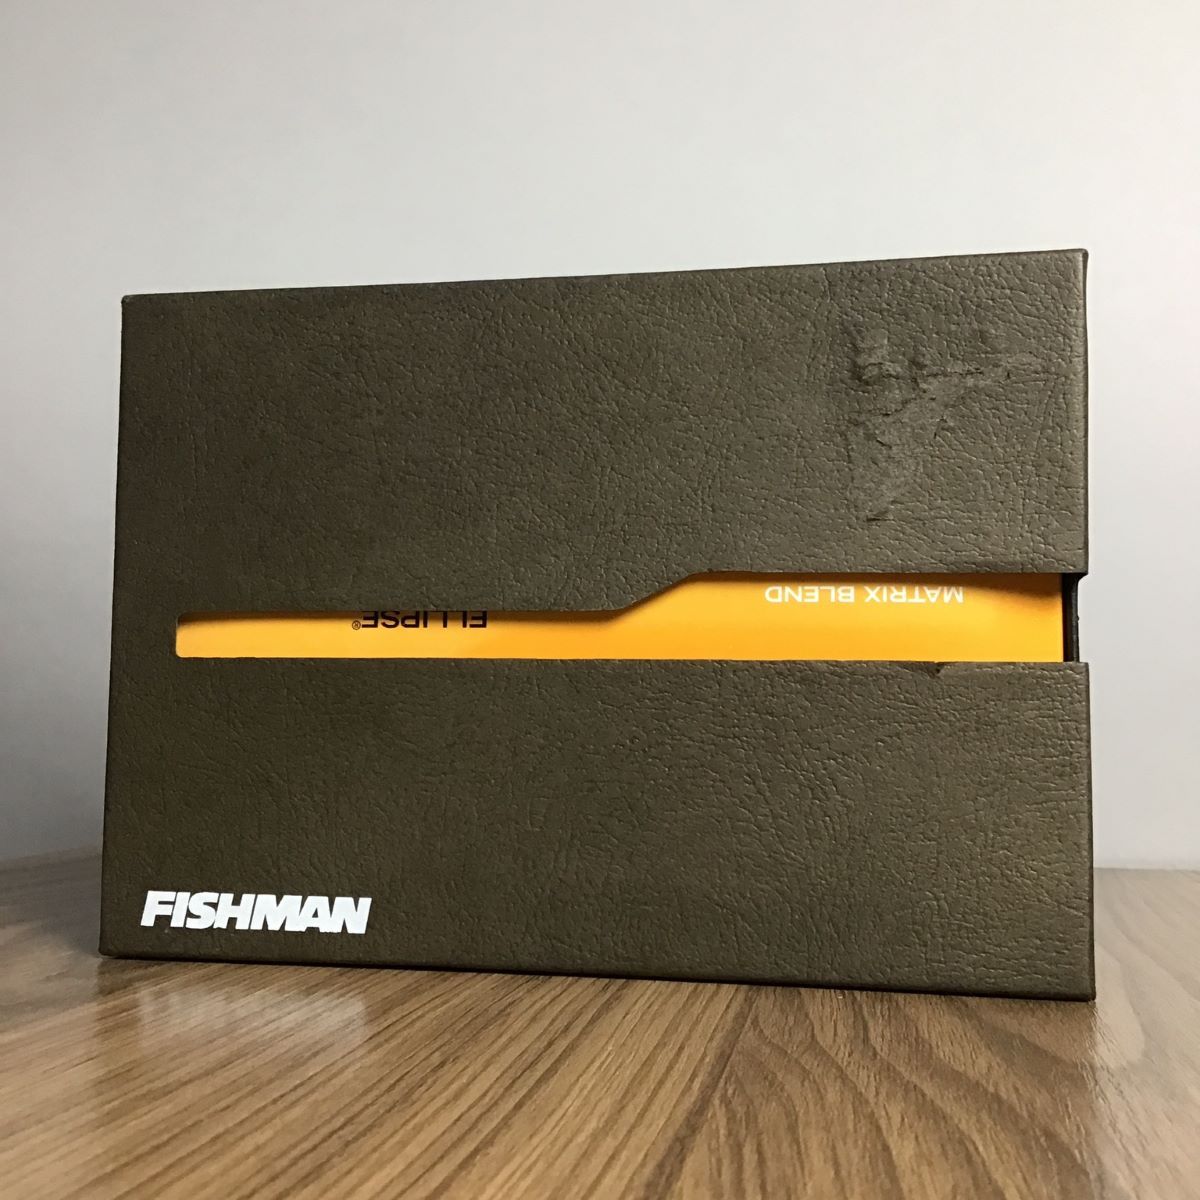 FISHMAN フィッシュマン マトリックス・ブレンド (2.3mm)９V電池